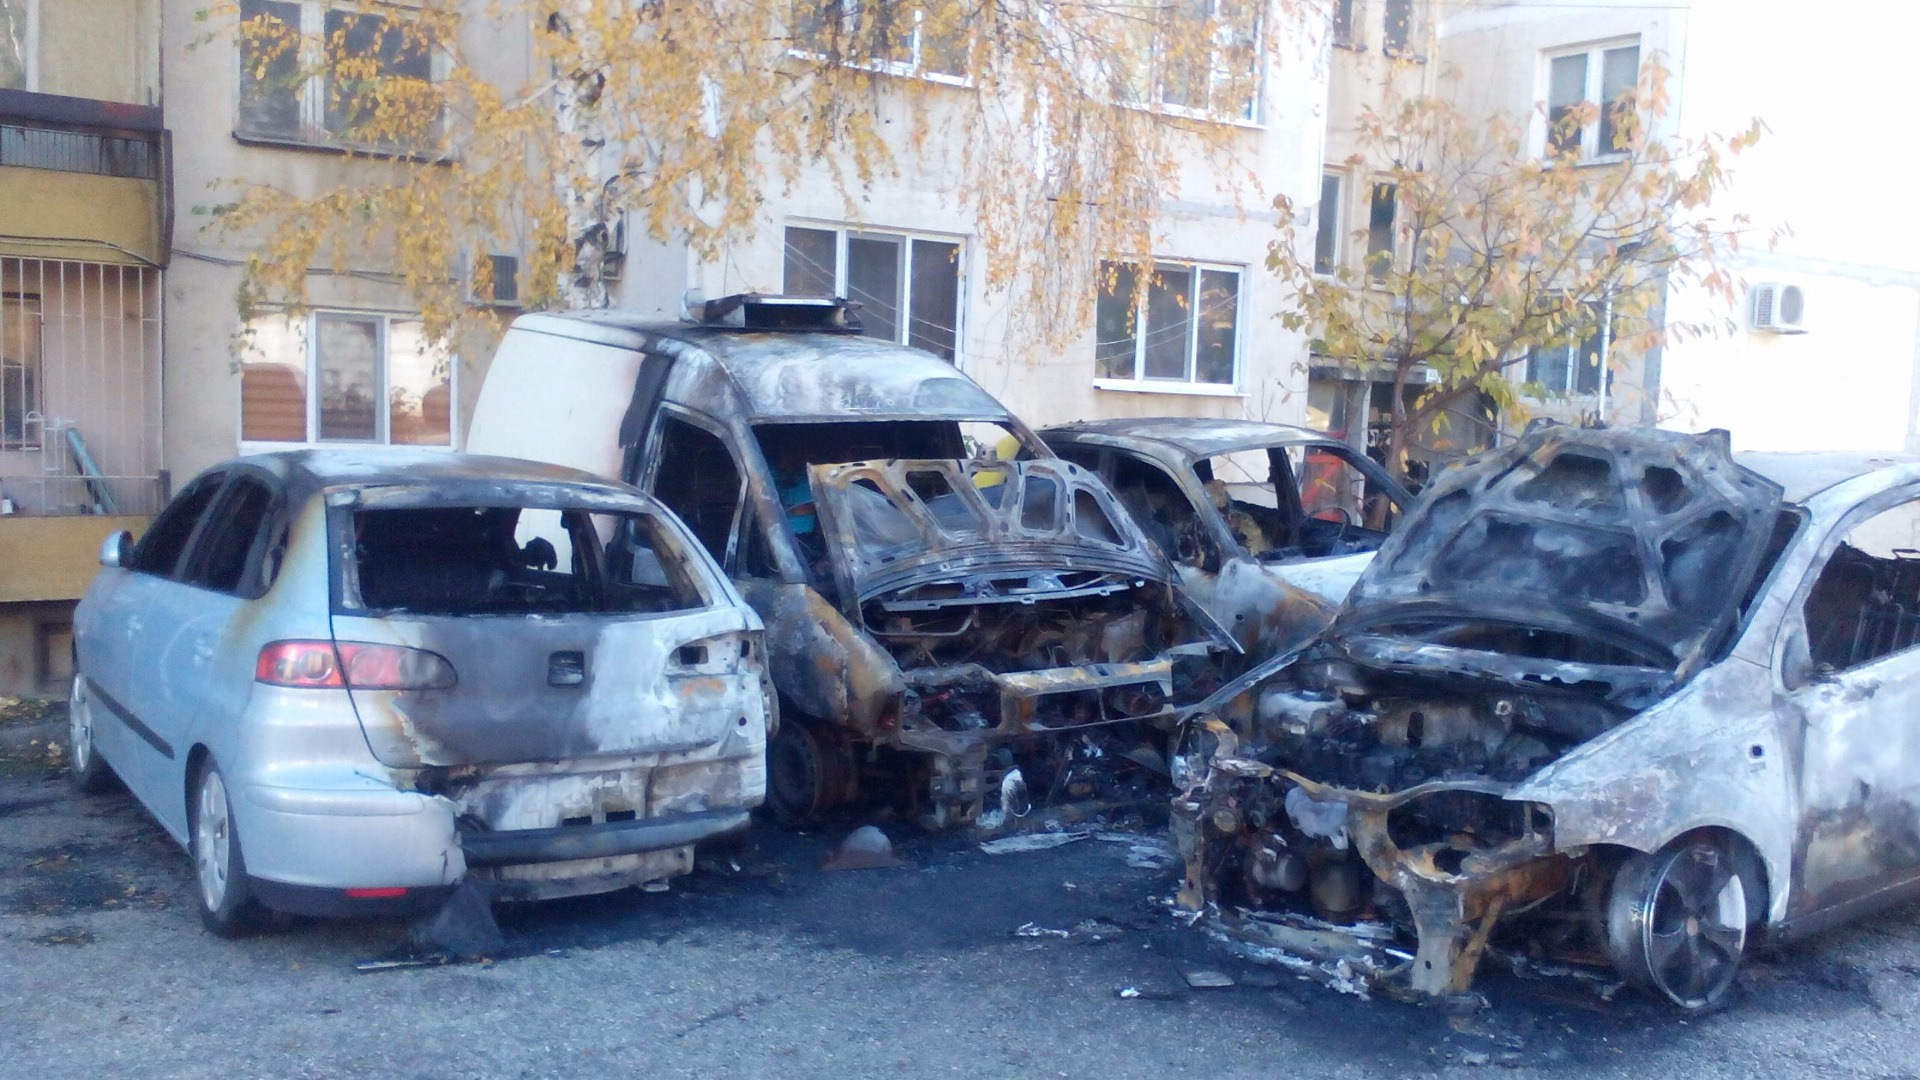 Автомобил с бургаска регистрация е бил подпален снощи в бургаския